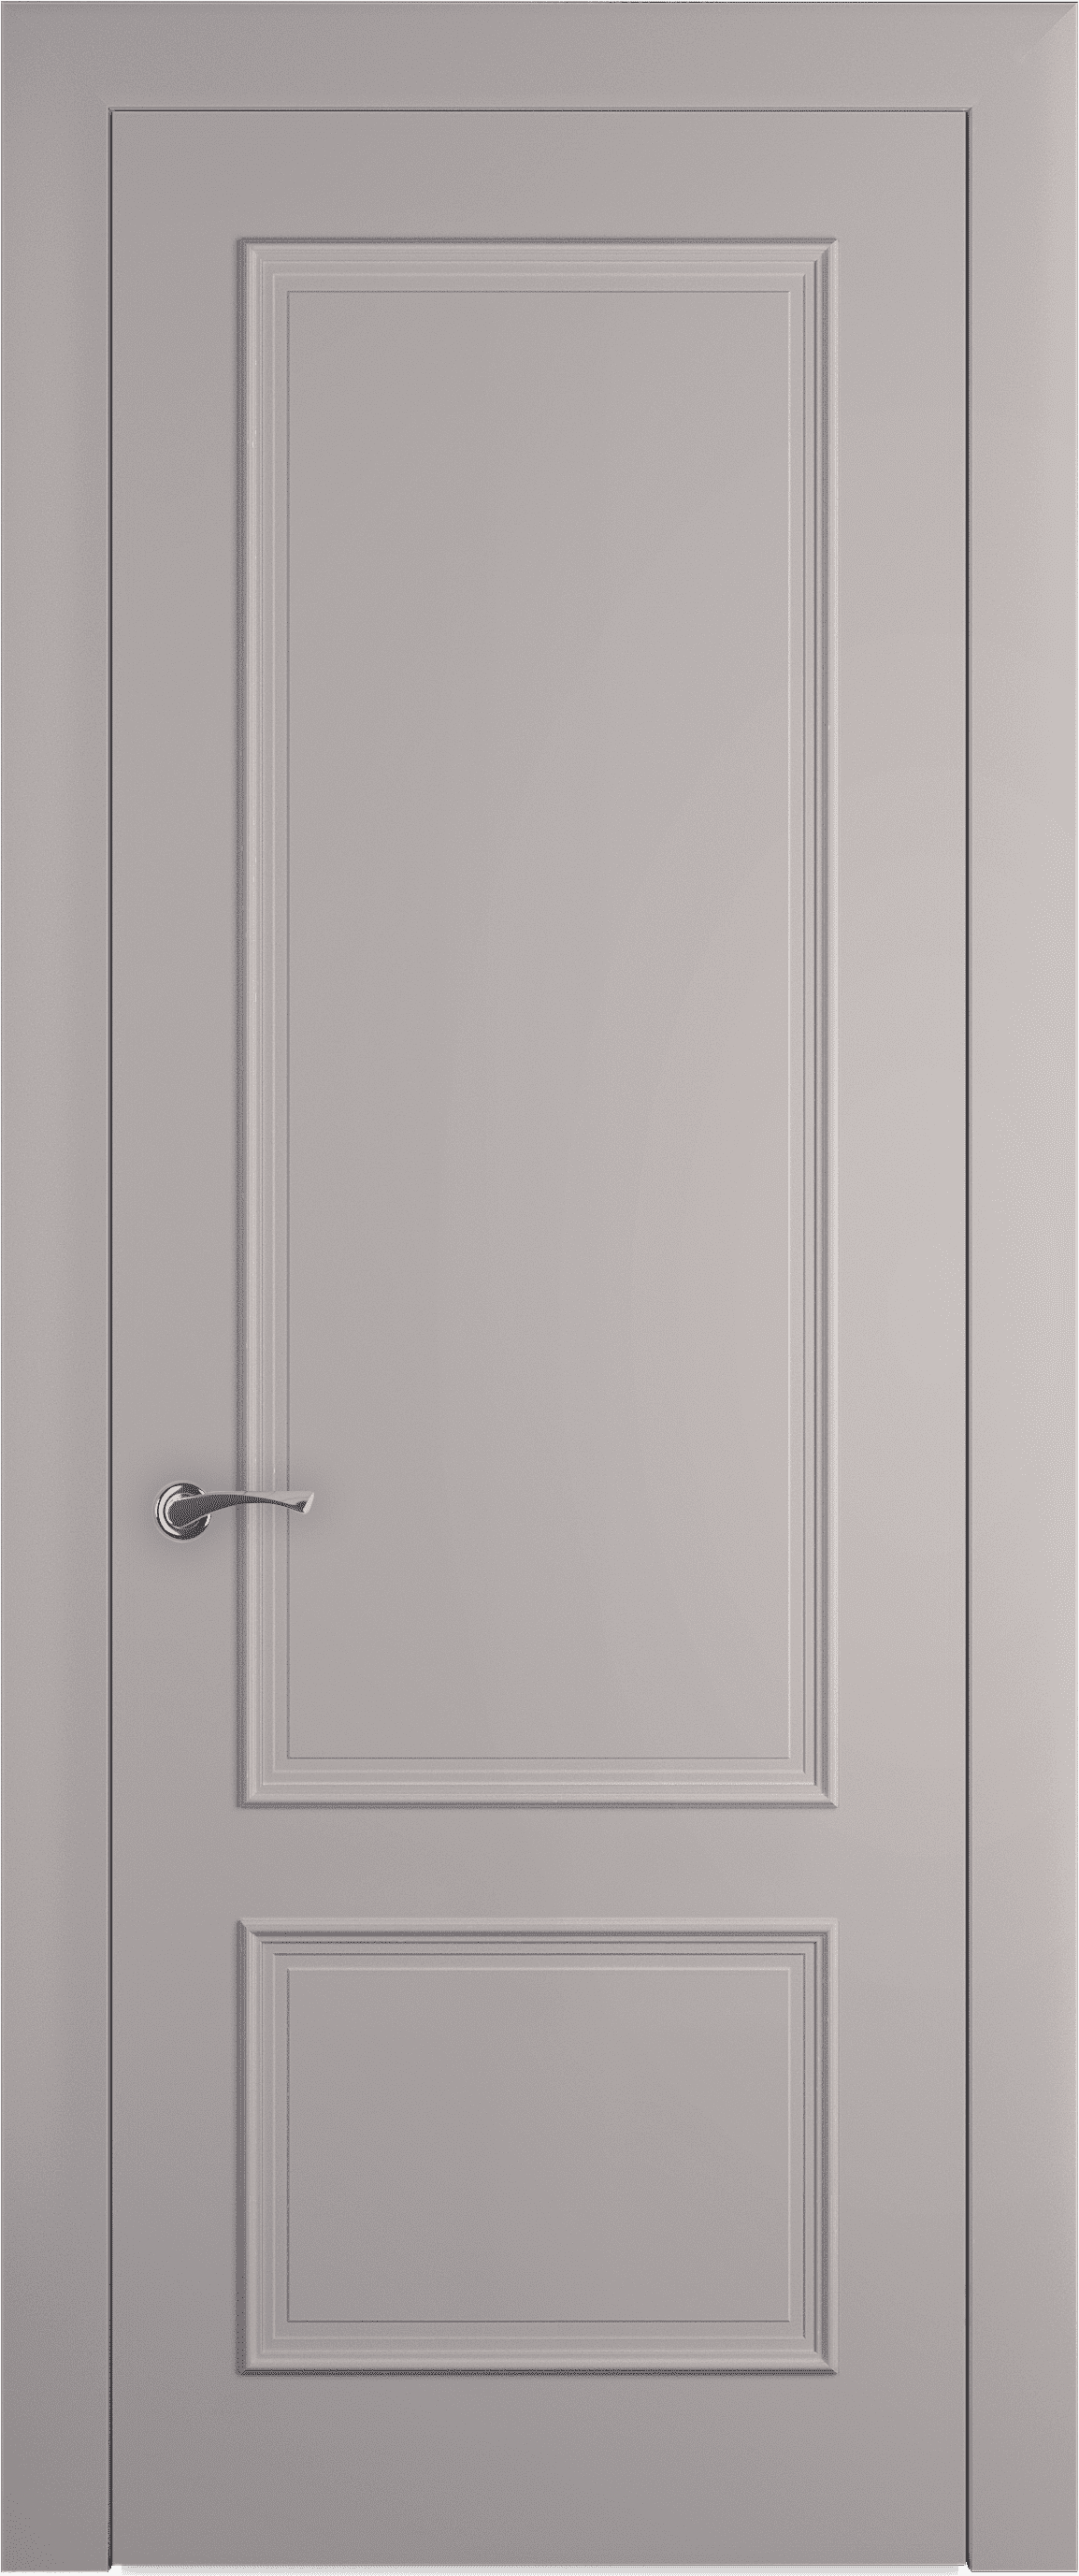 Межкомнатная дверь Лион багет 9